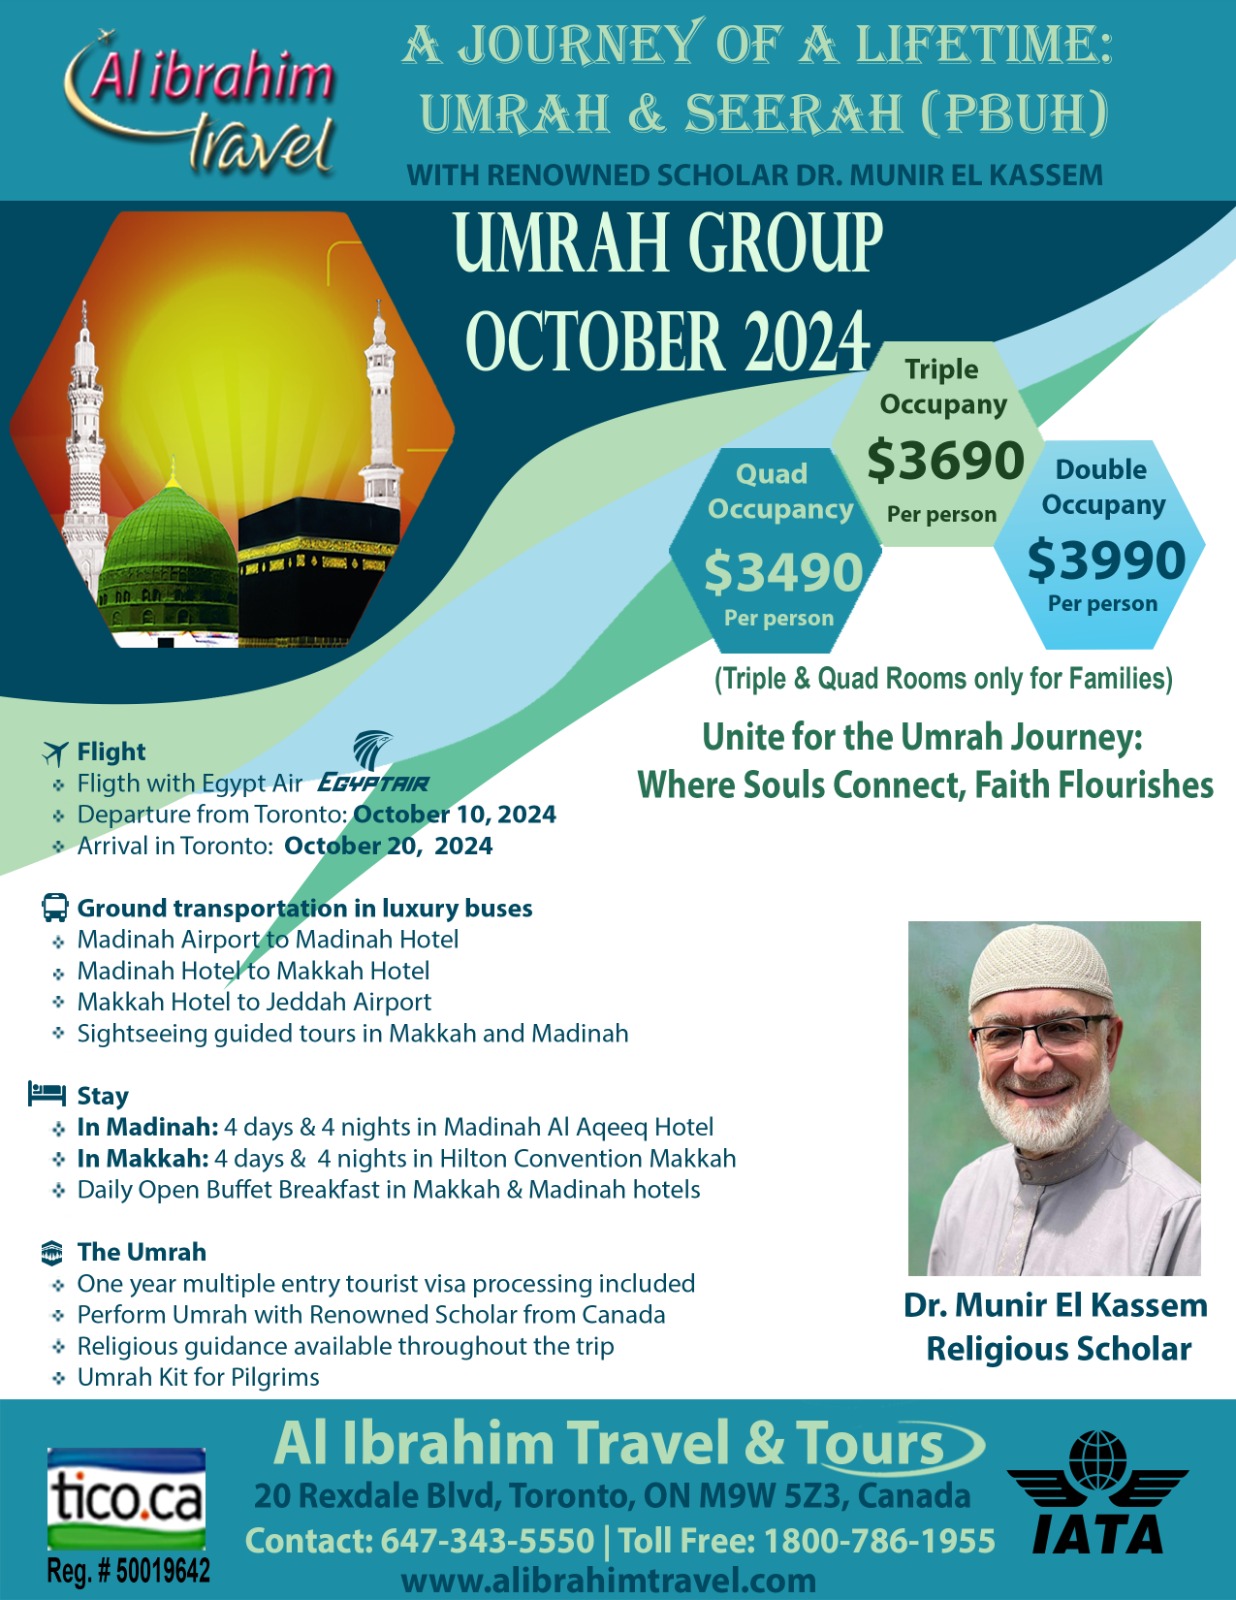 October 2024 Umrah Group Package during the Holy month of Rabi al Awal with Dr. Munir El Kassem